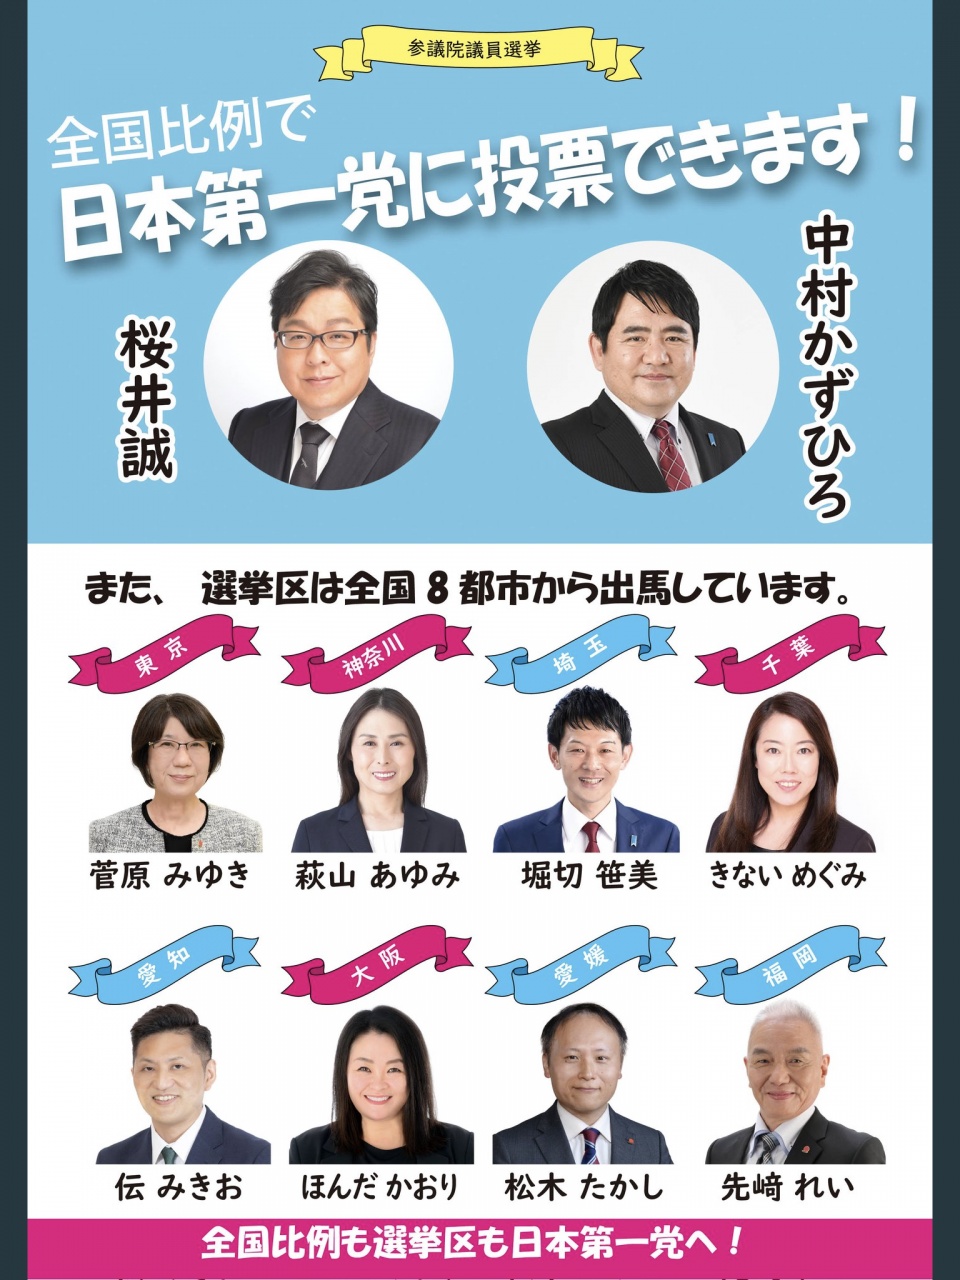 【日本第一党 桜井･中村 比例候補者による遊説予定】
